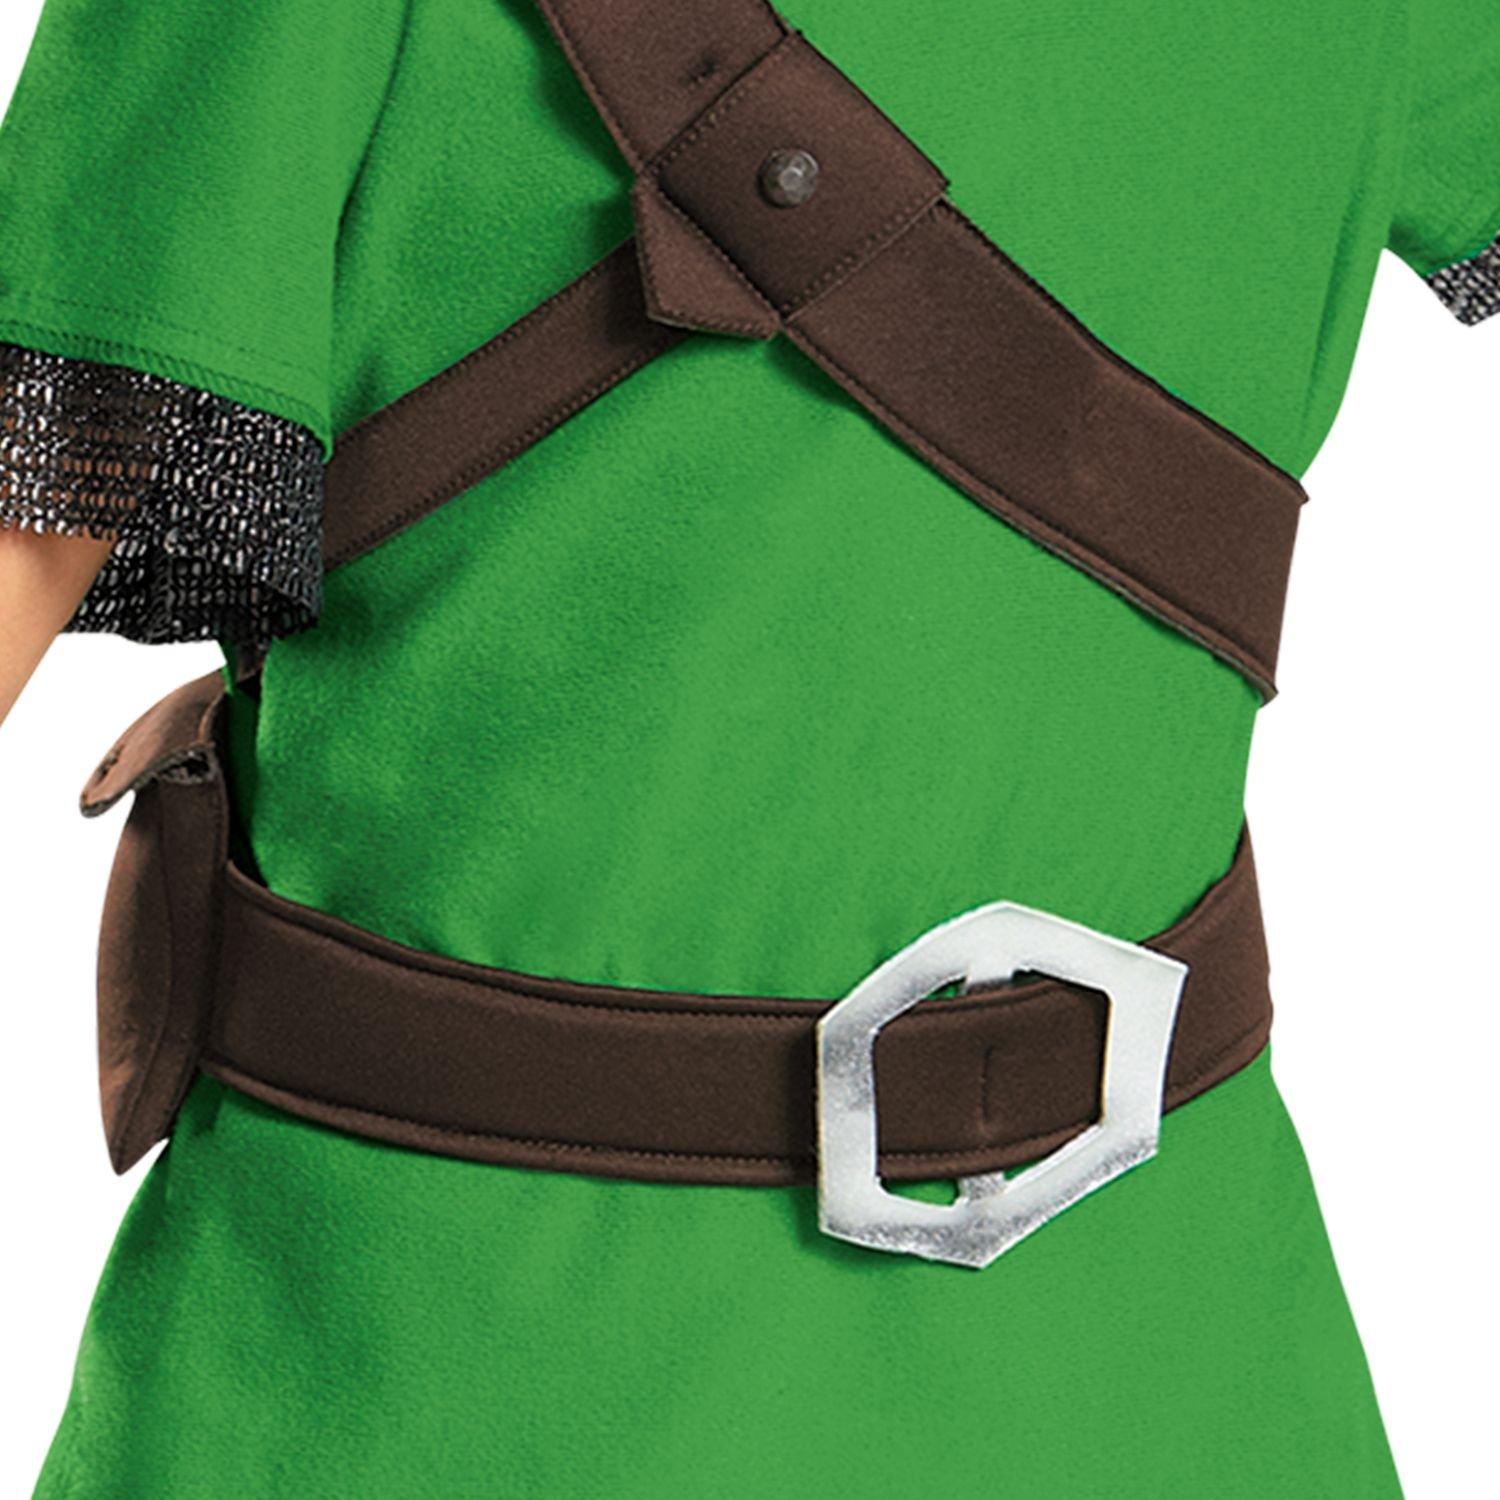 Epic Legend of Zelda Link Costume